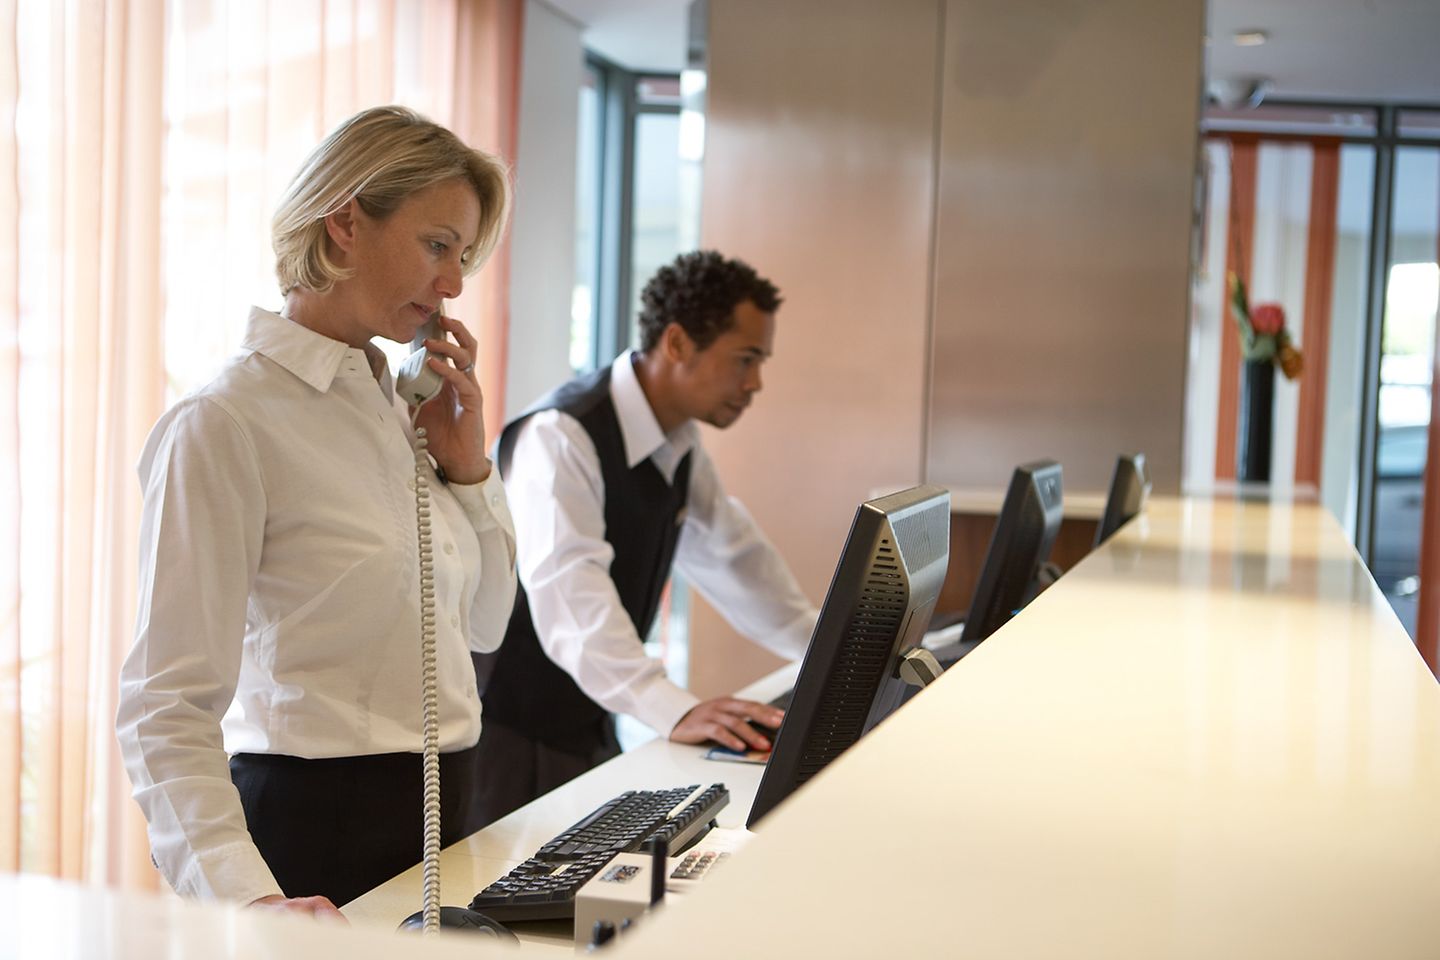 Recepcionista hablando por teléfono en la recepción de un hotel mientras su compañero comprueba datos en la computadora